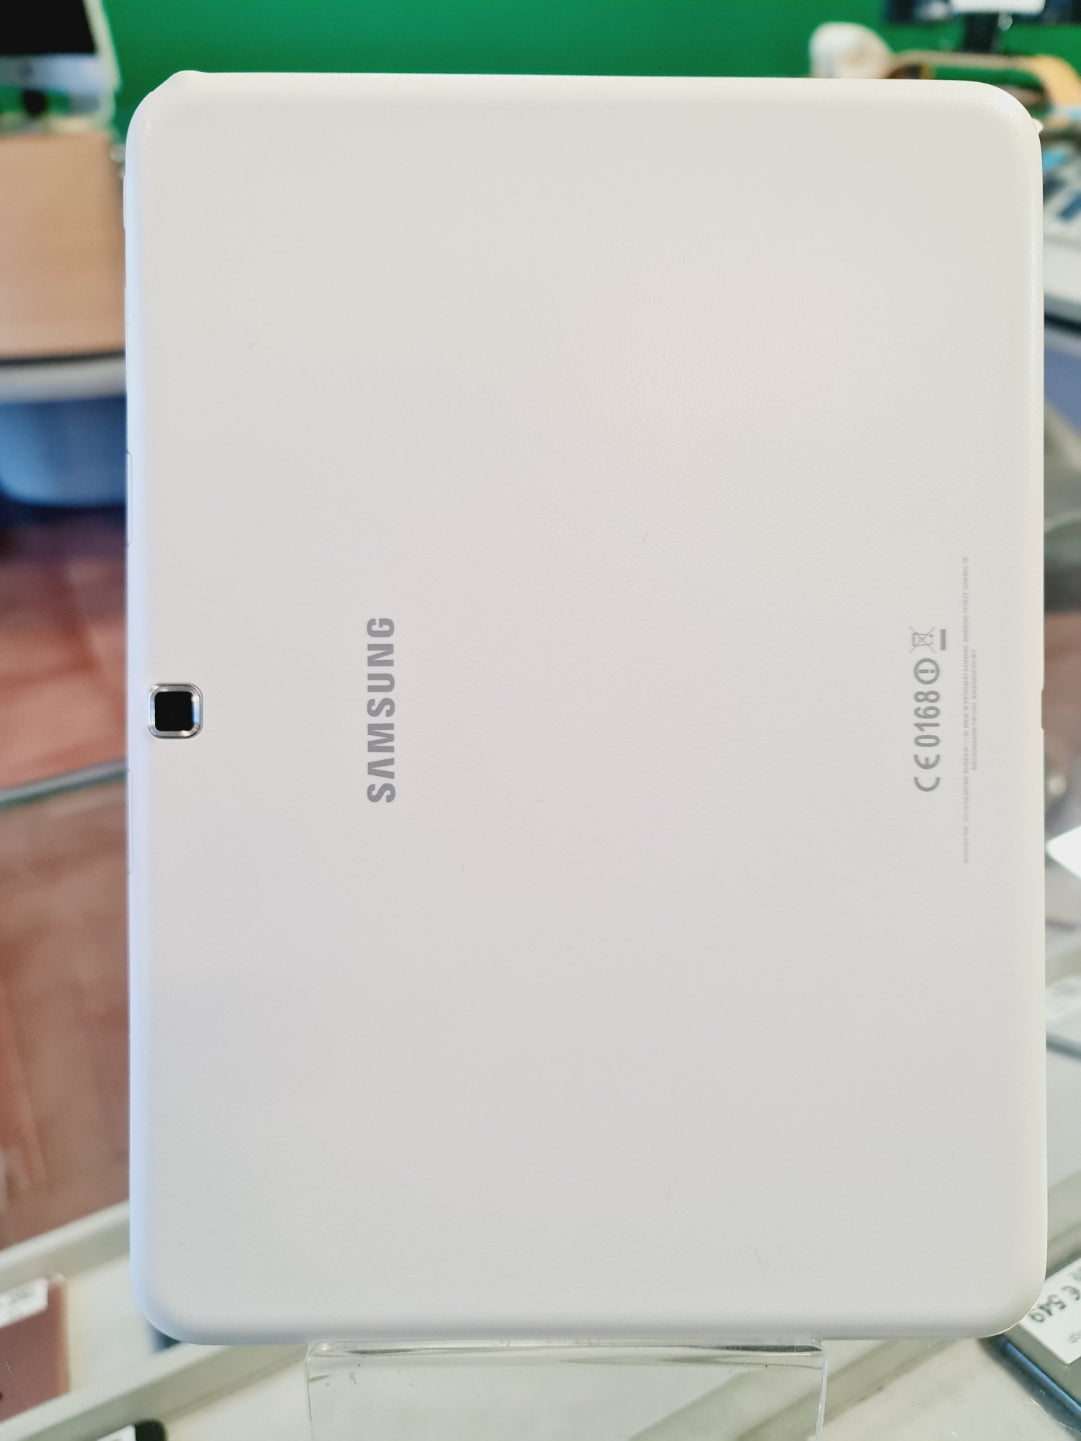 Samsung Galaxy Tab 4 - 16gb - cellular - bianco